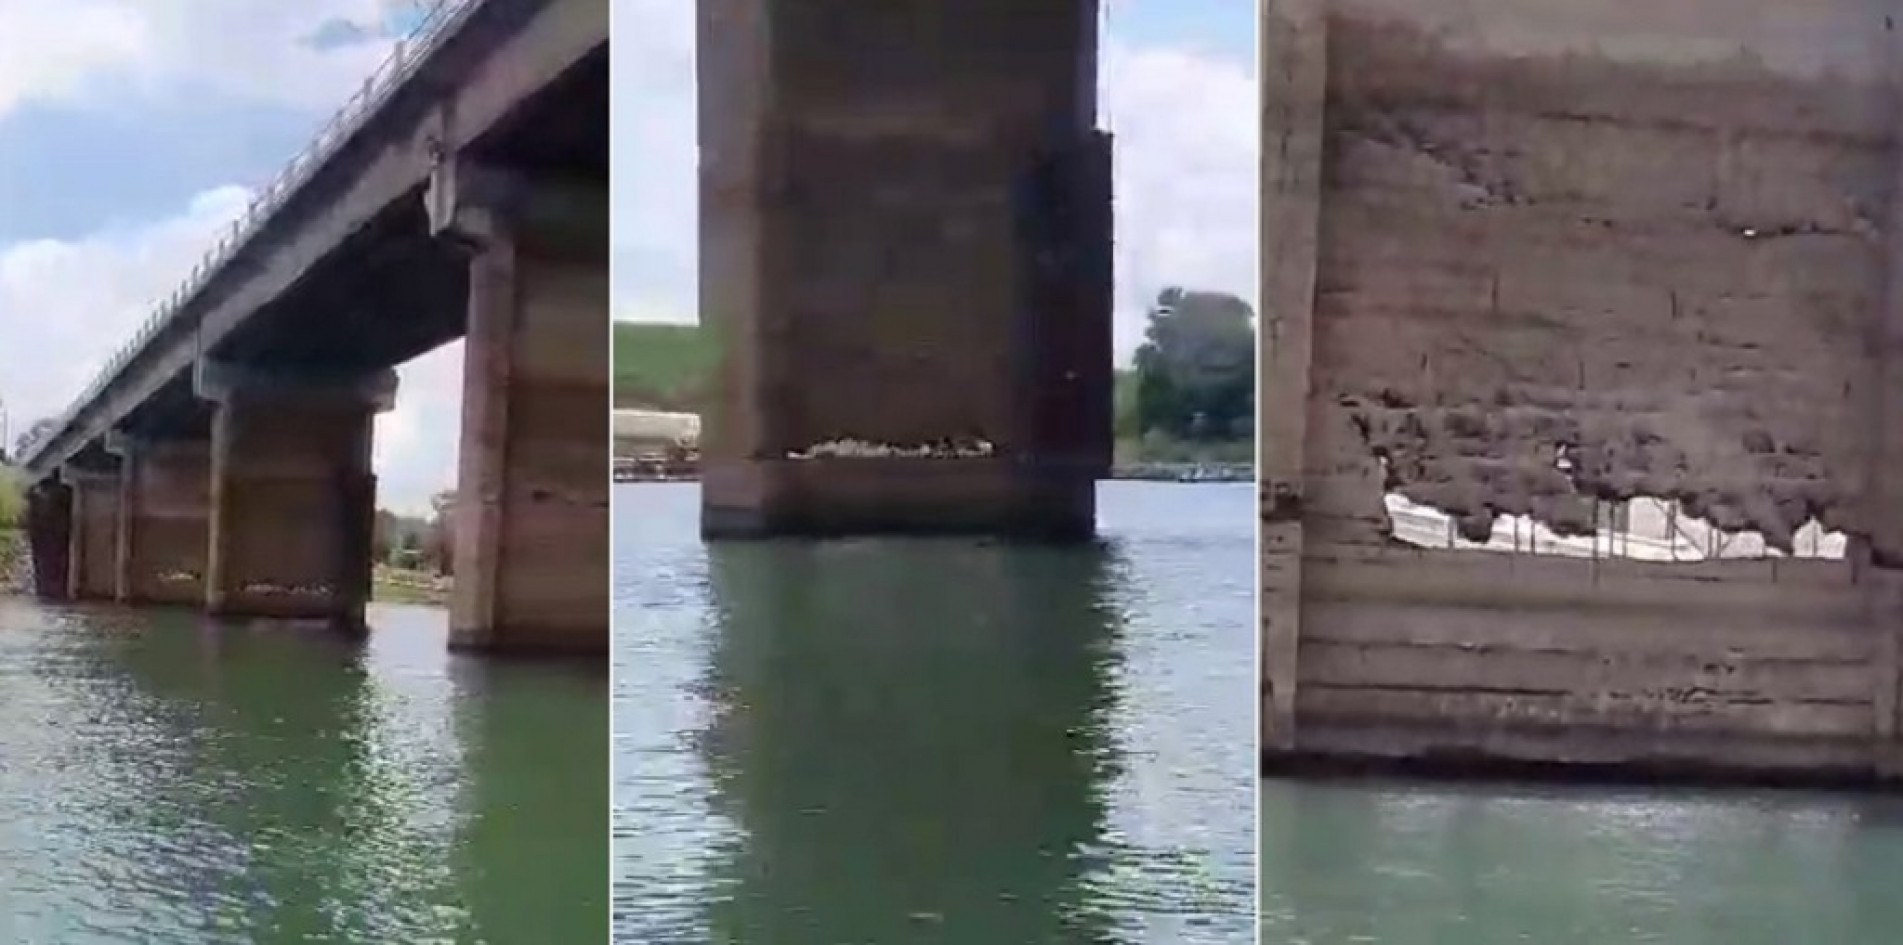 Imagens mostram a estrutura da ponte deteriorada e preocupam